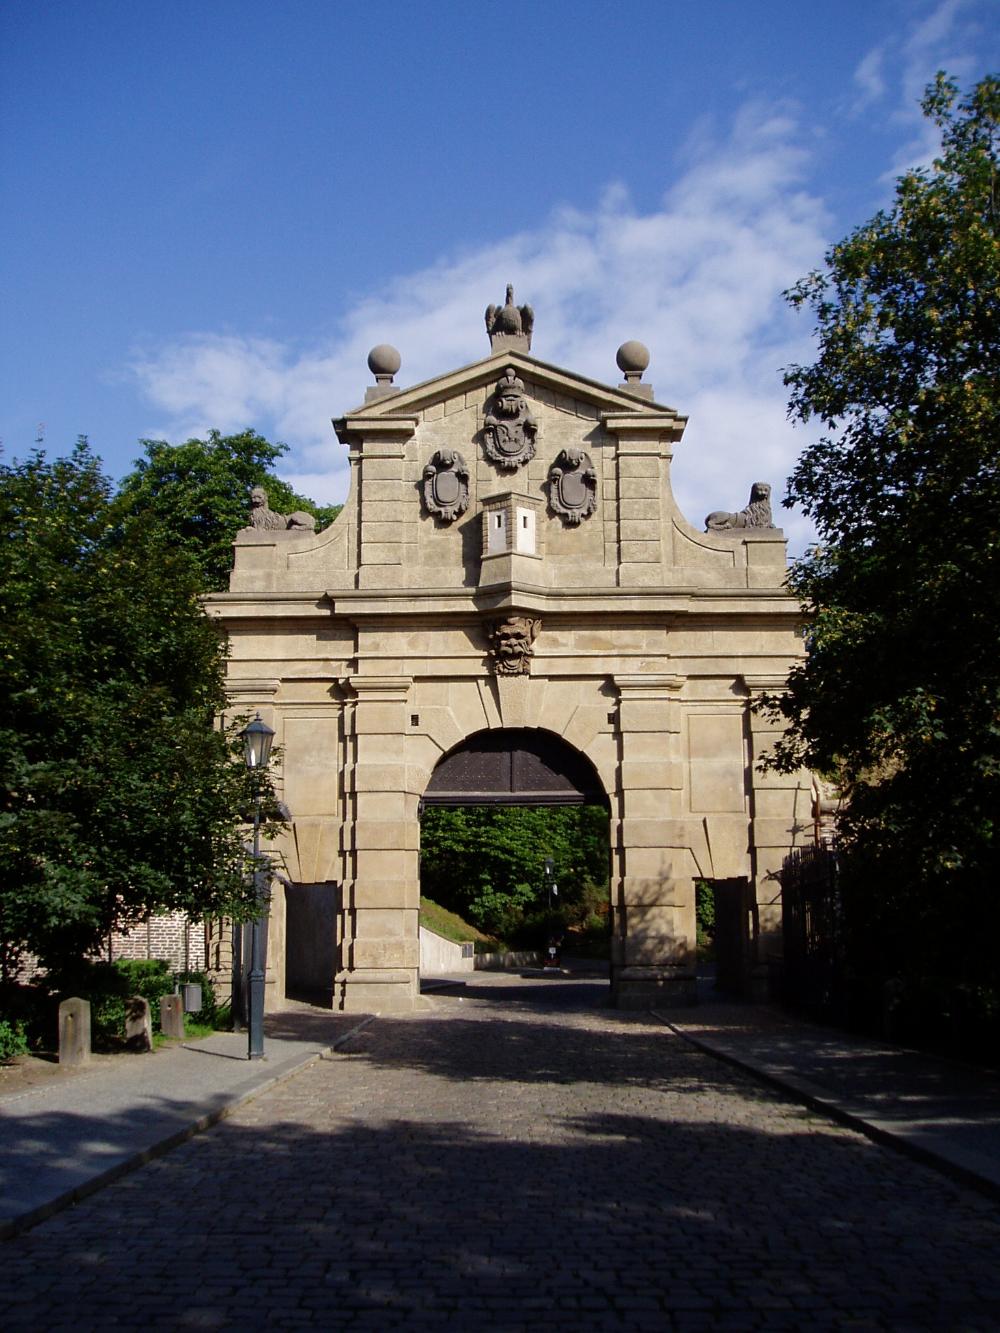 Táborská neboli Leopoldova brána